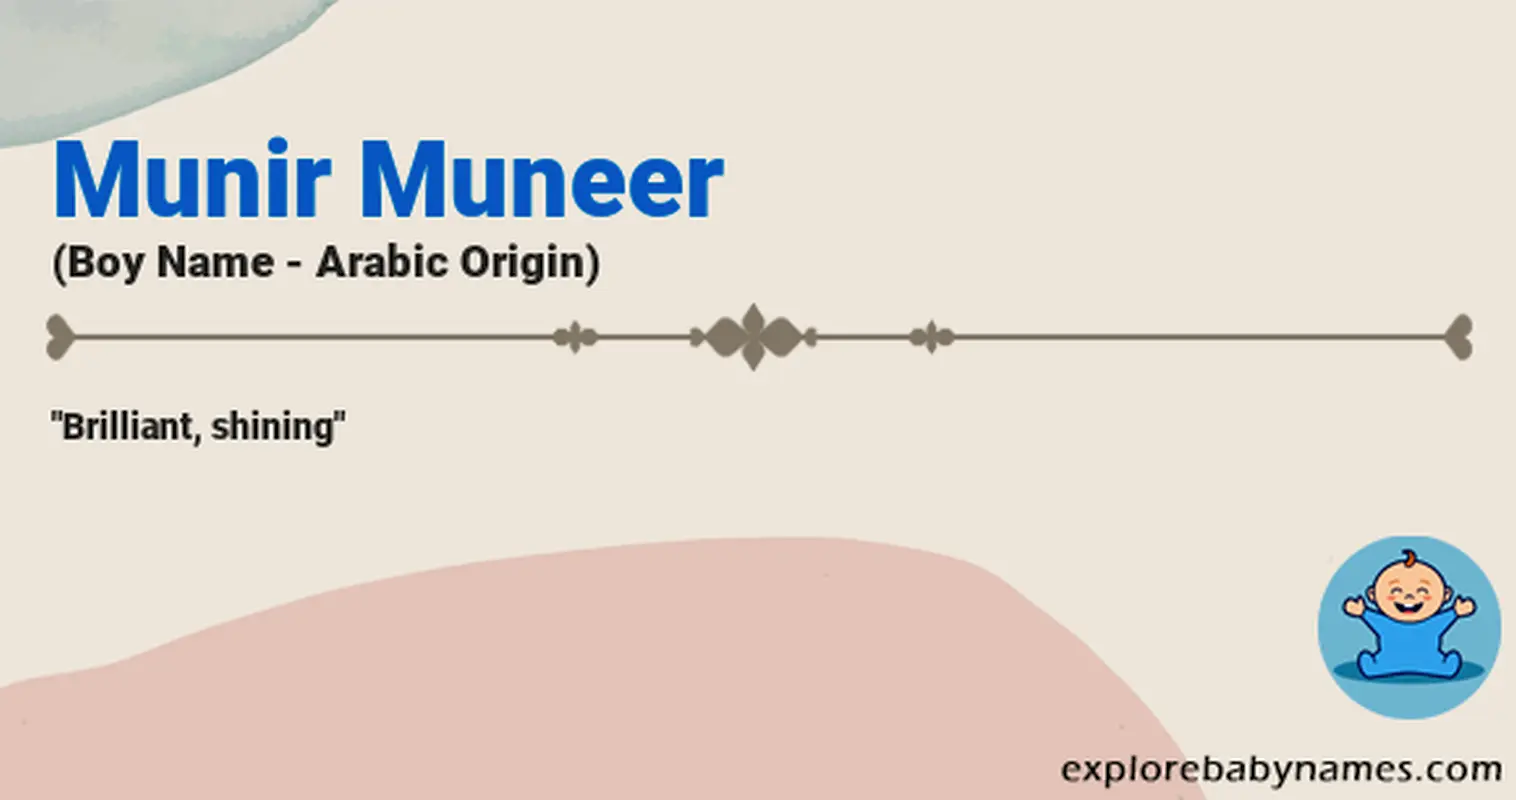 Meaning of Munir Muneer